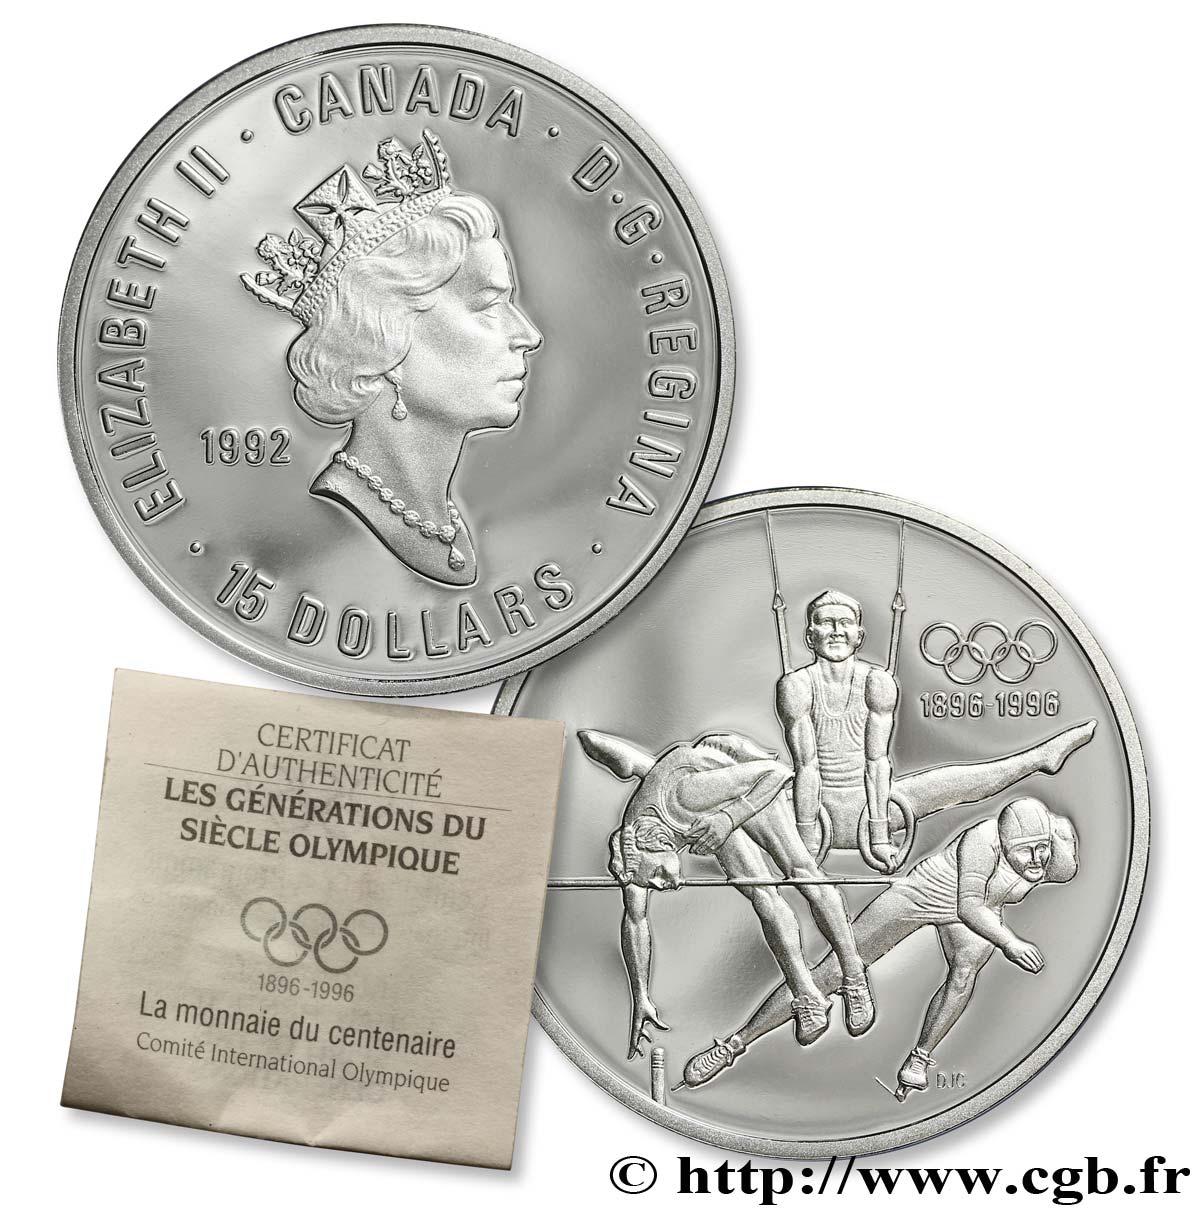 CANADA 15 Dollars BE Elisabeth II / Jeux Olympiques 1992, saut en hauteur, anneaux, patin de vitesse 1992  MS 